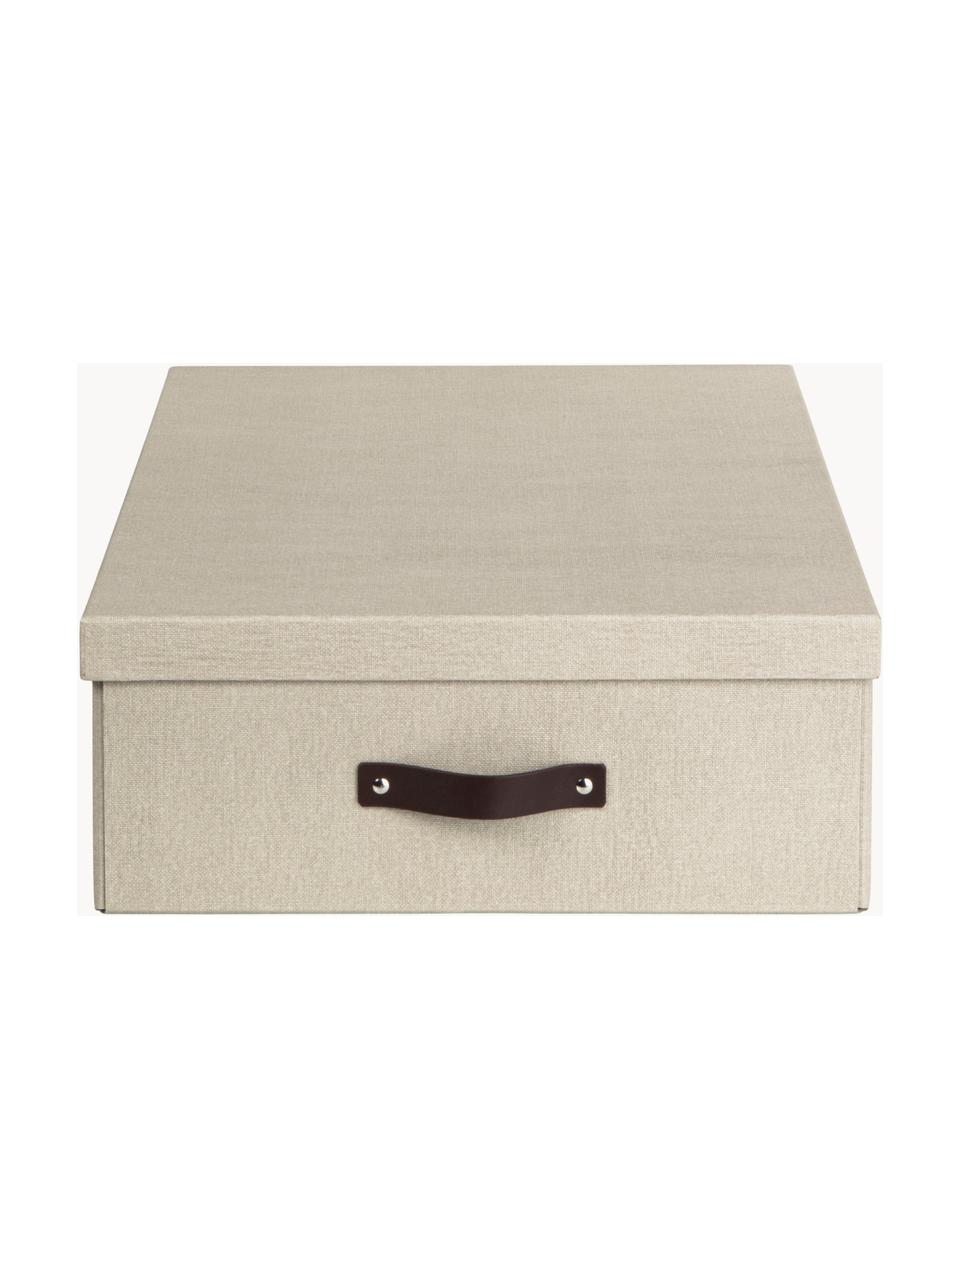 Úložná krabice Karolin, Světle béžová, tmavě hnědá, Š 39 cm, D 56 cm